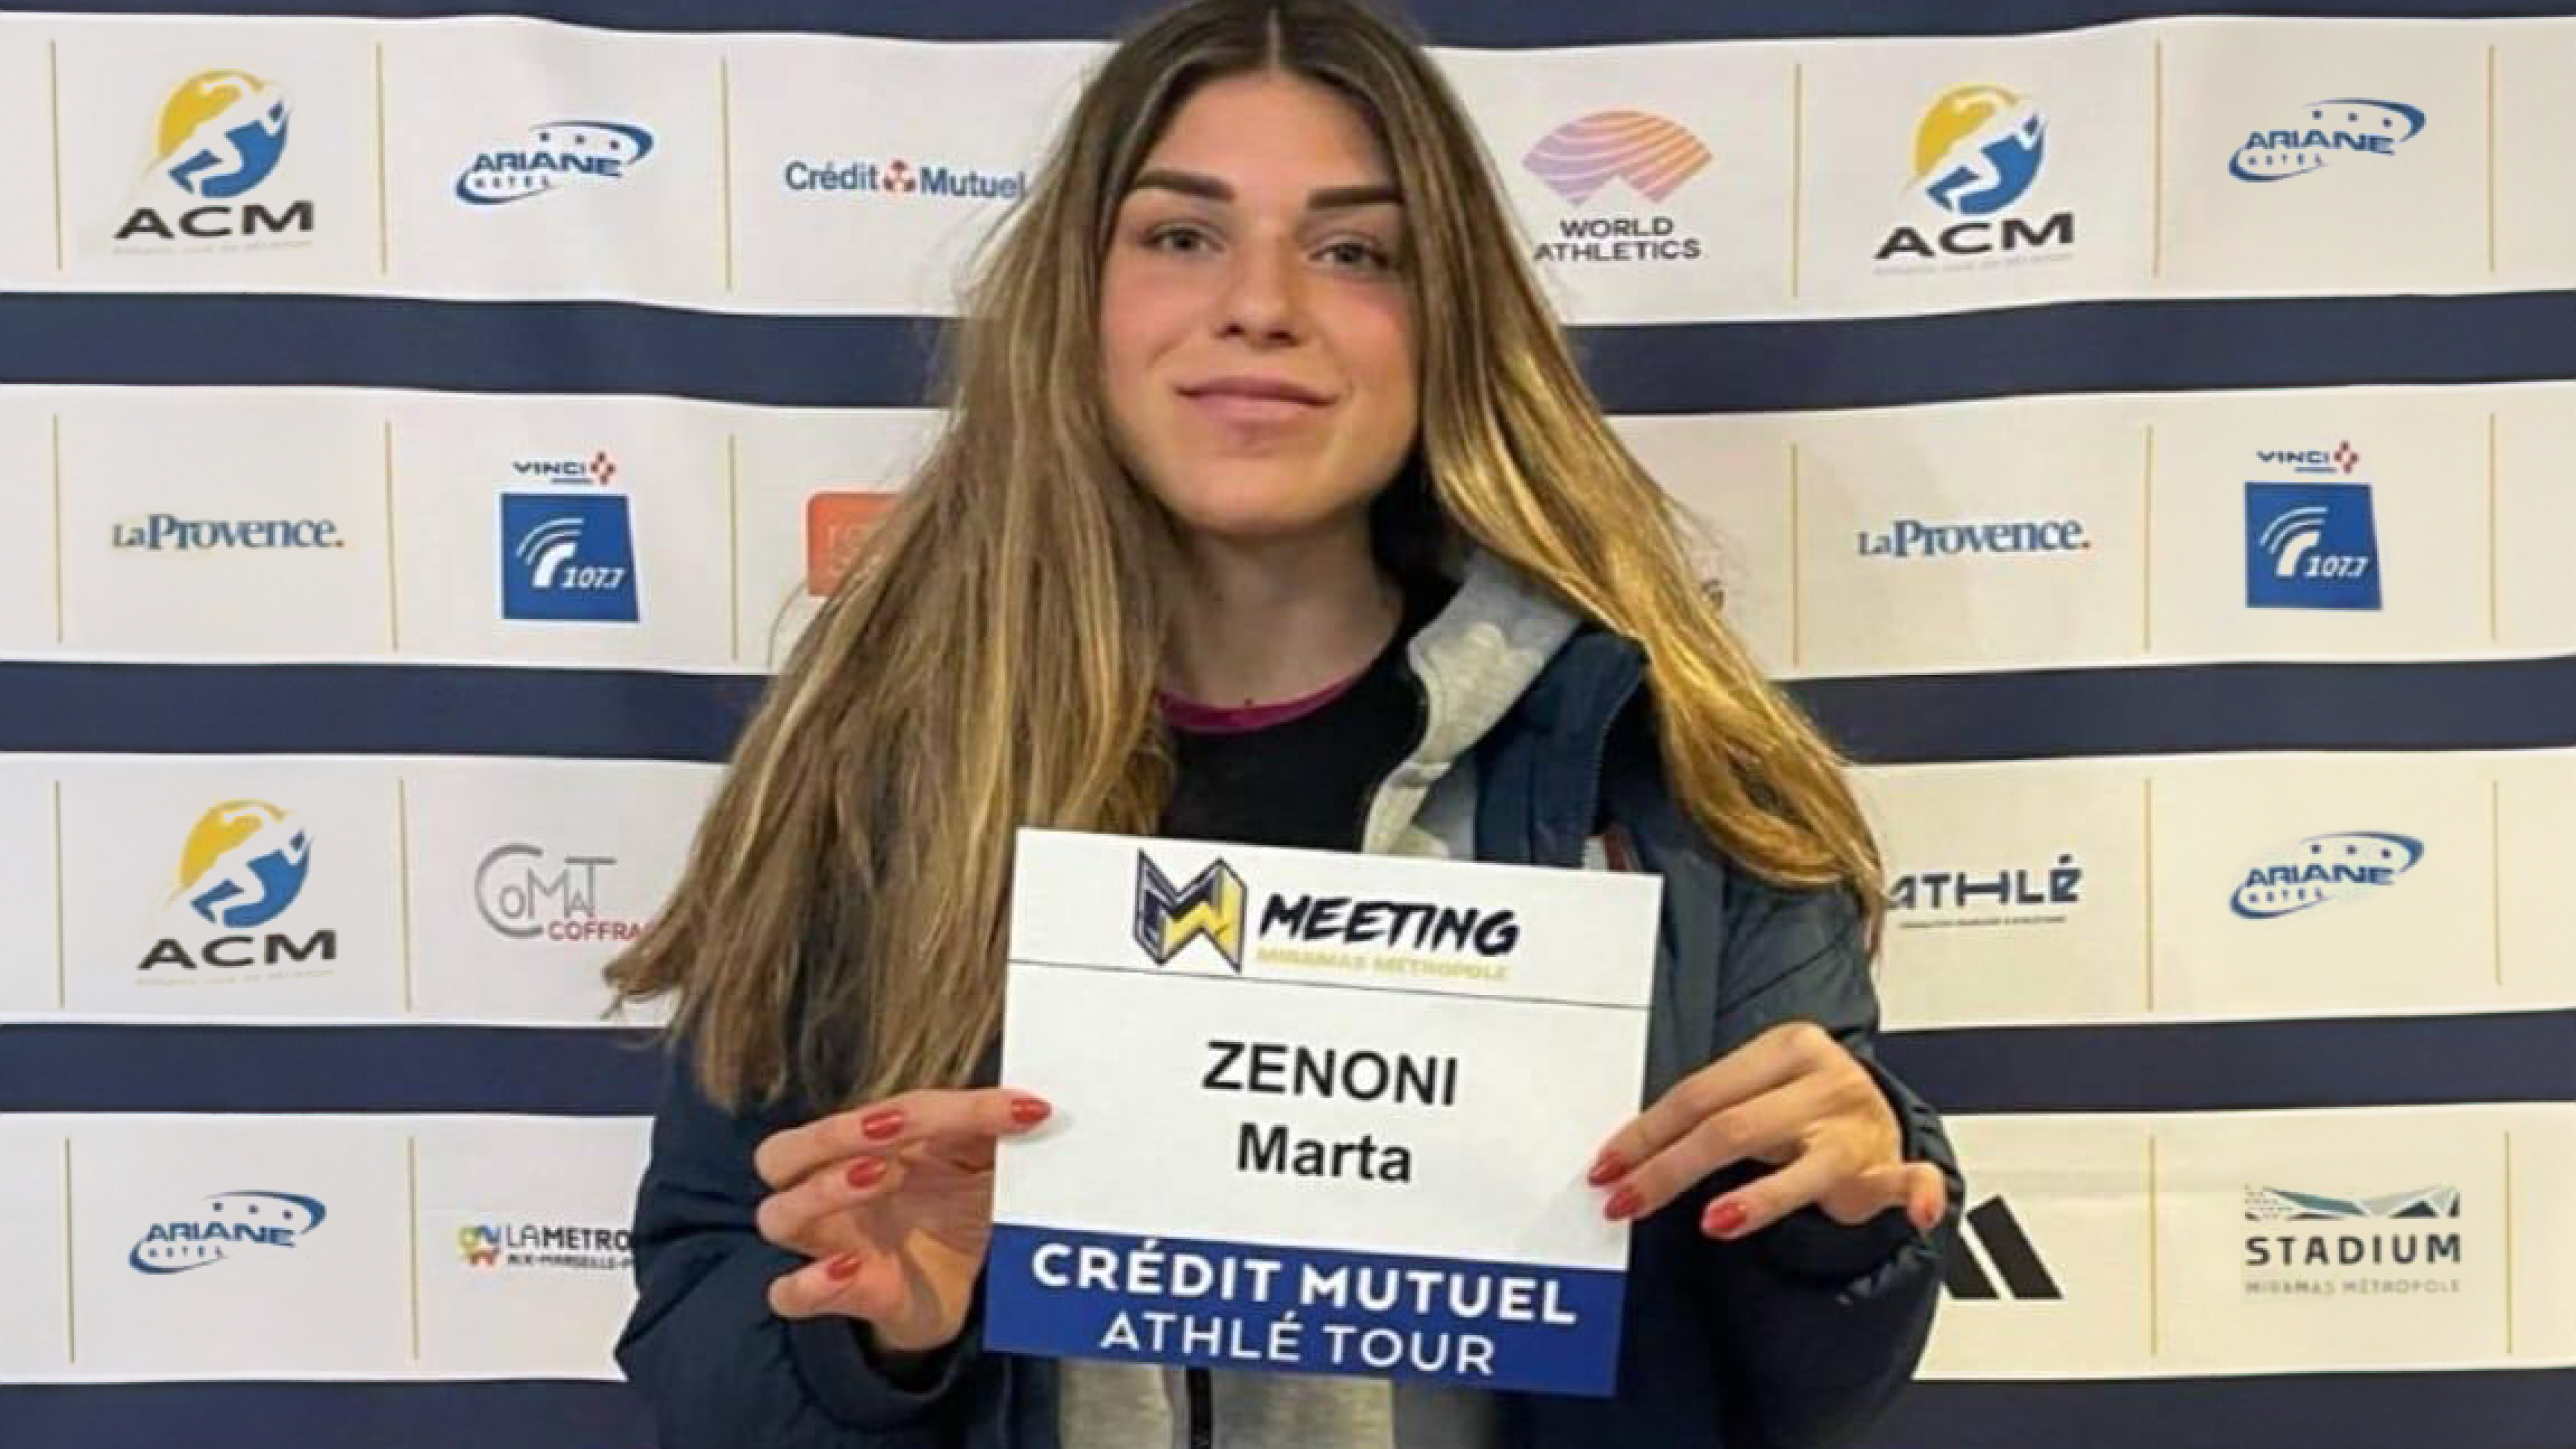 Marta Zenoni